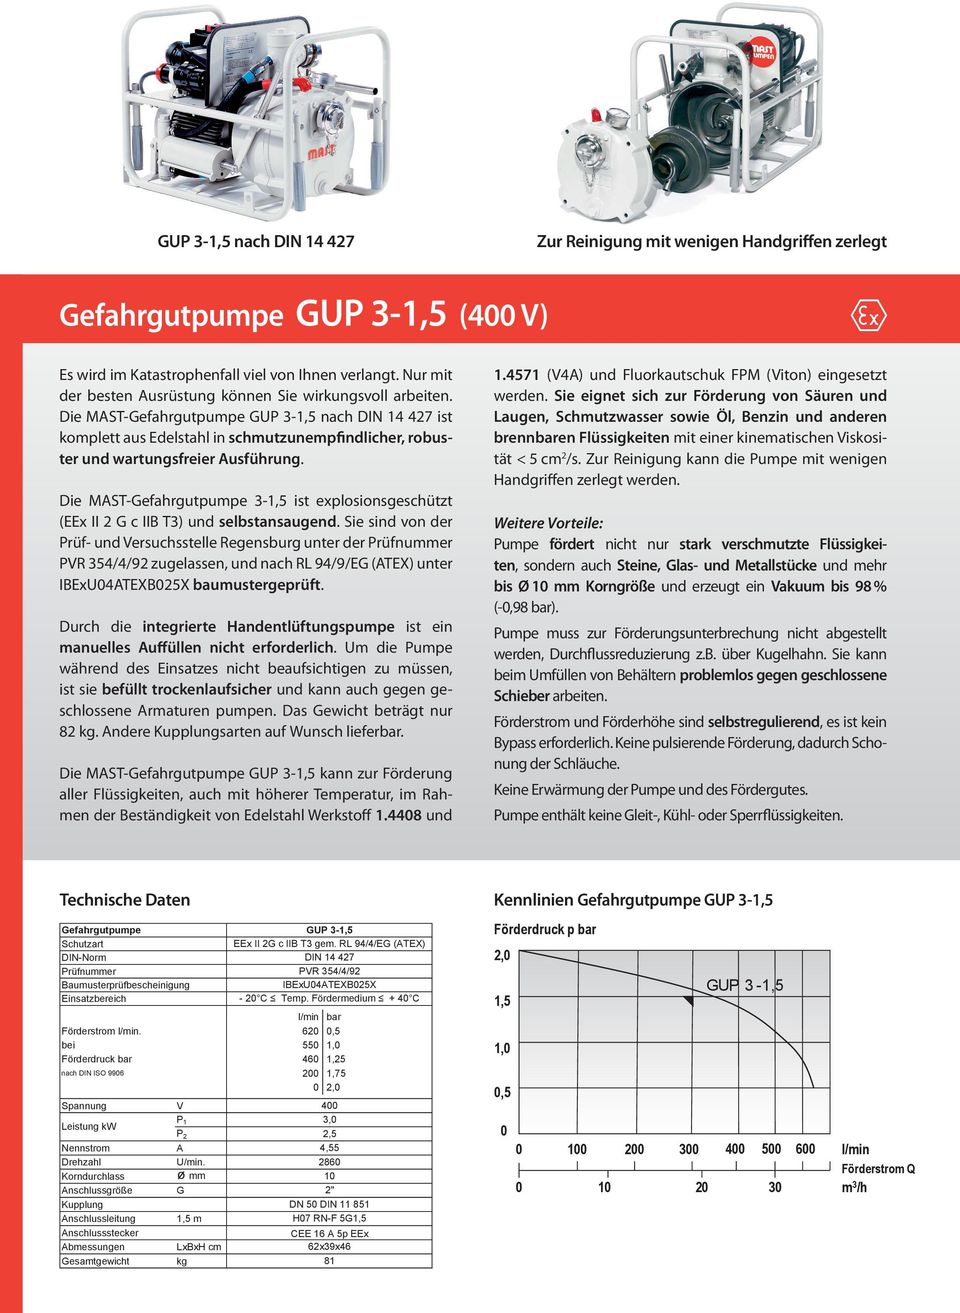 Die MAST-Gefahrgutpumpe GUP 3-1,5 nach DIN 14 427 ist komplett aus Edelstahl in schmutzunempfindlicher, robuster und wartungsfreier Ausführung.